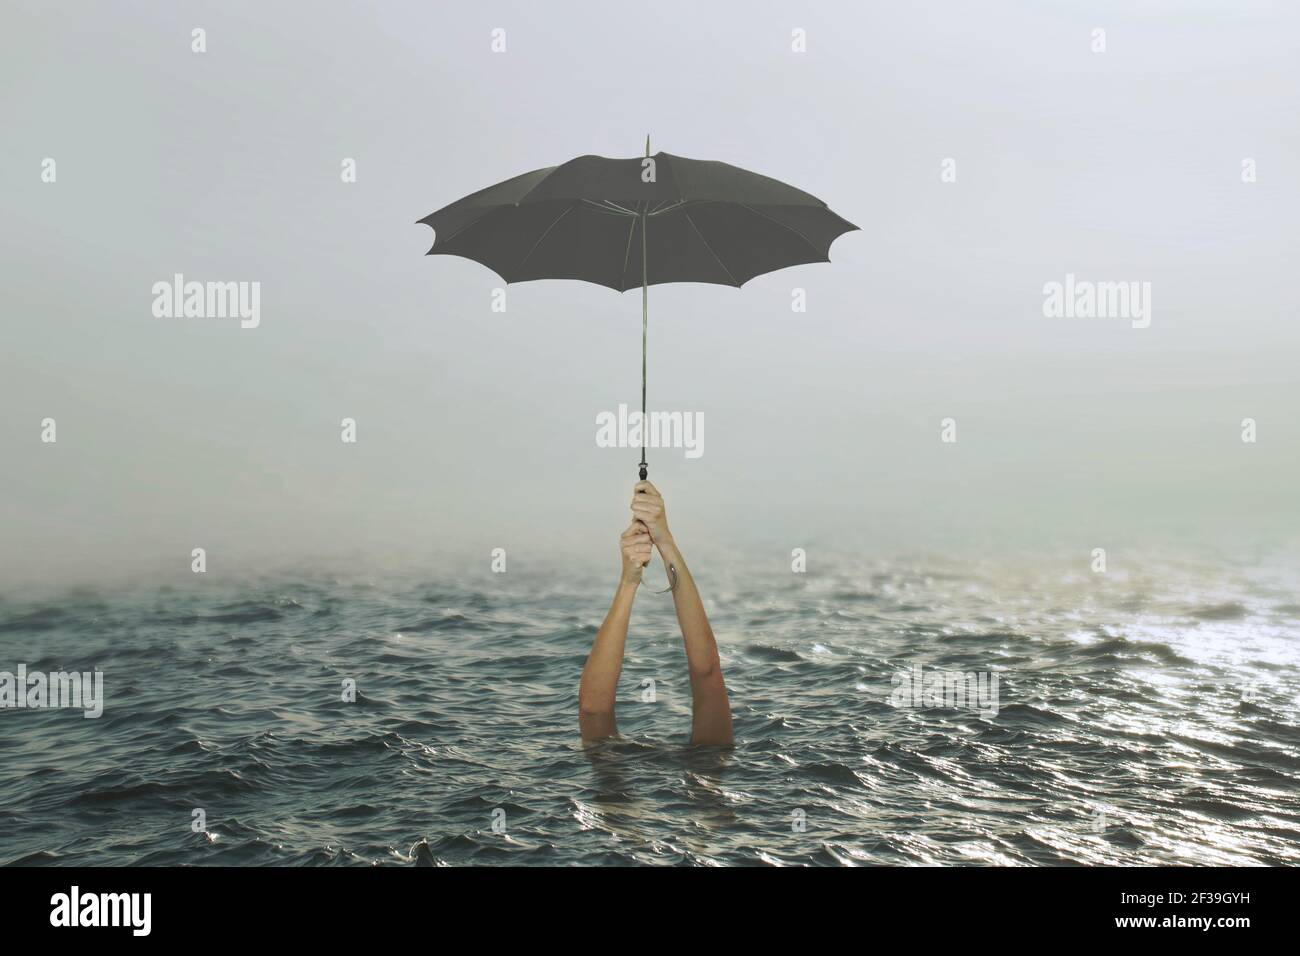 personne accrochée à un parapluie au milieu de l'océan tente de sauver sa vie, le concept de succès et d'échec Banque D'Images